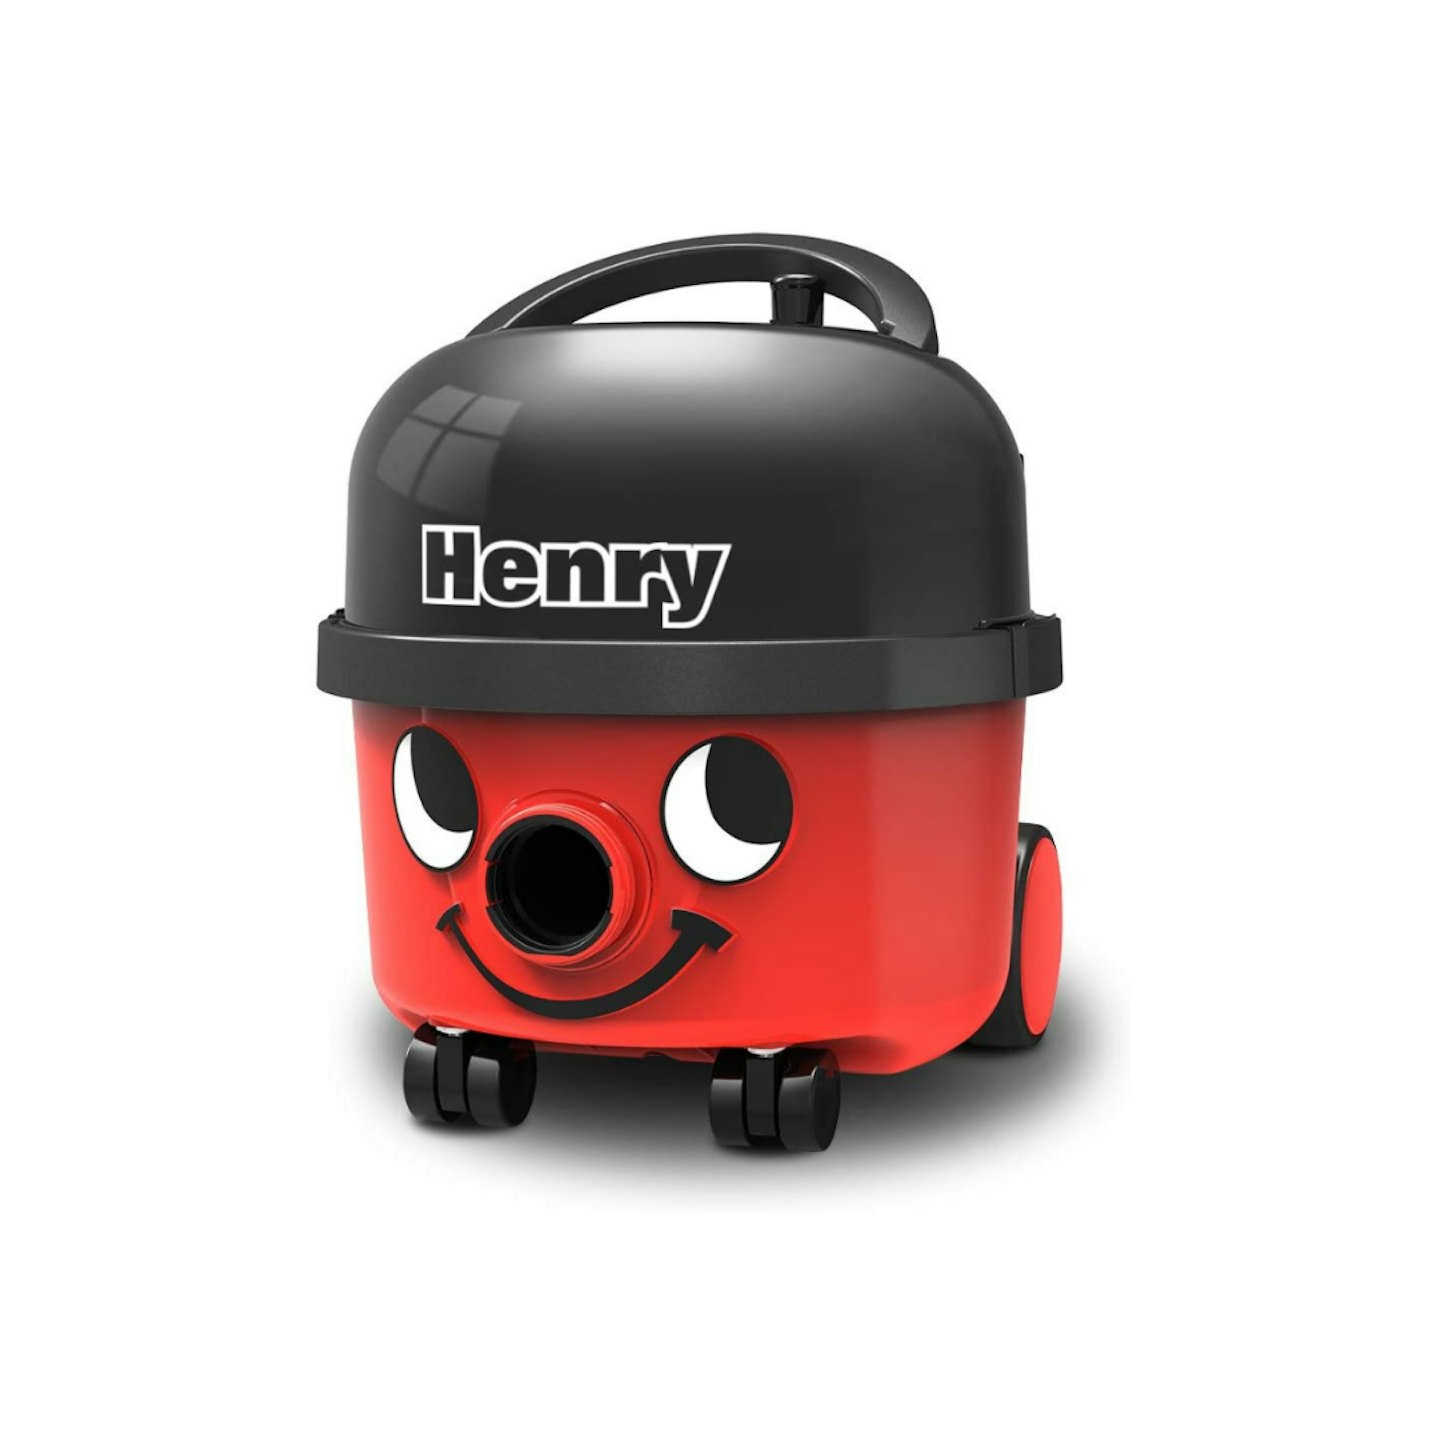 Henry HVR 160-11 Bagged Cylinder Vacuum